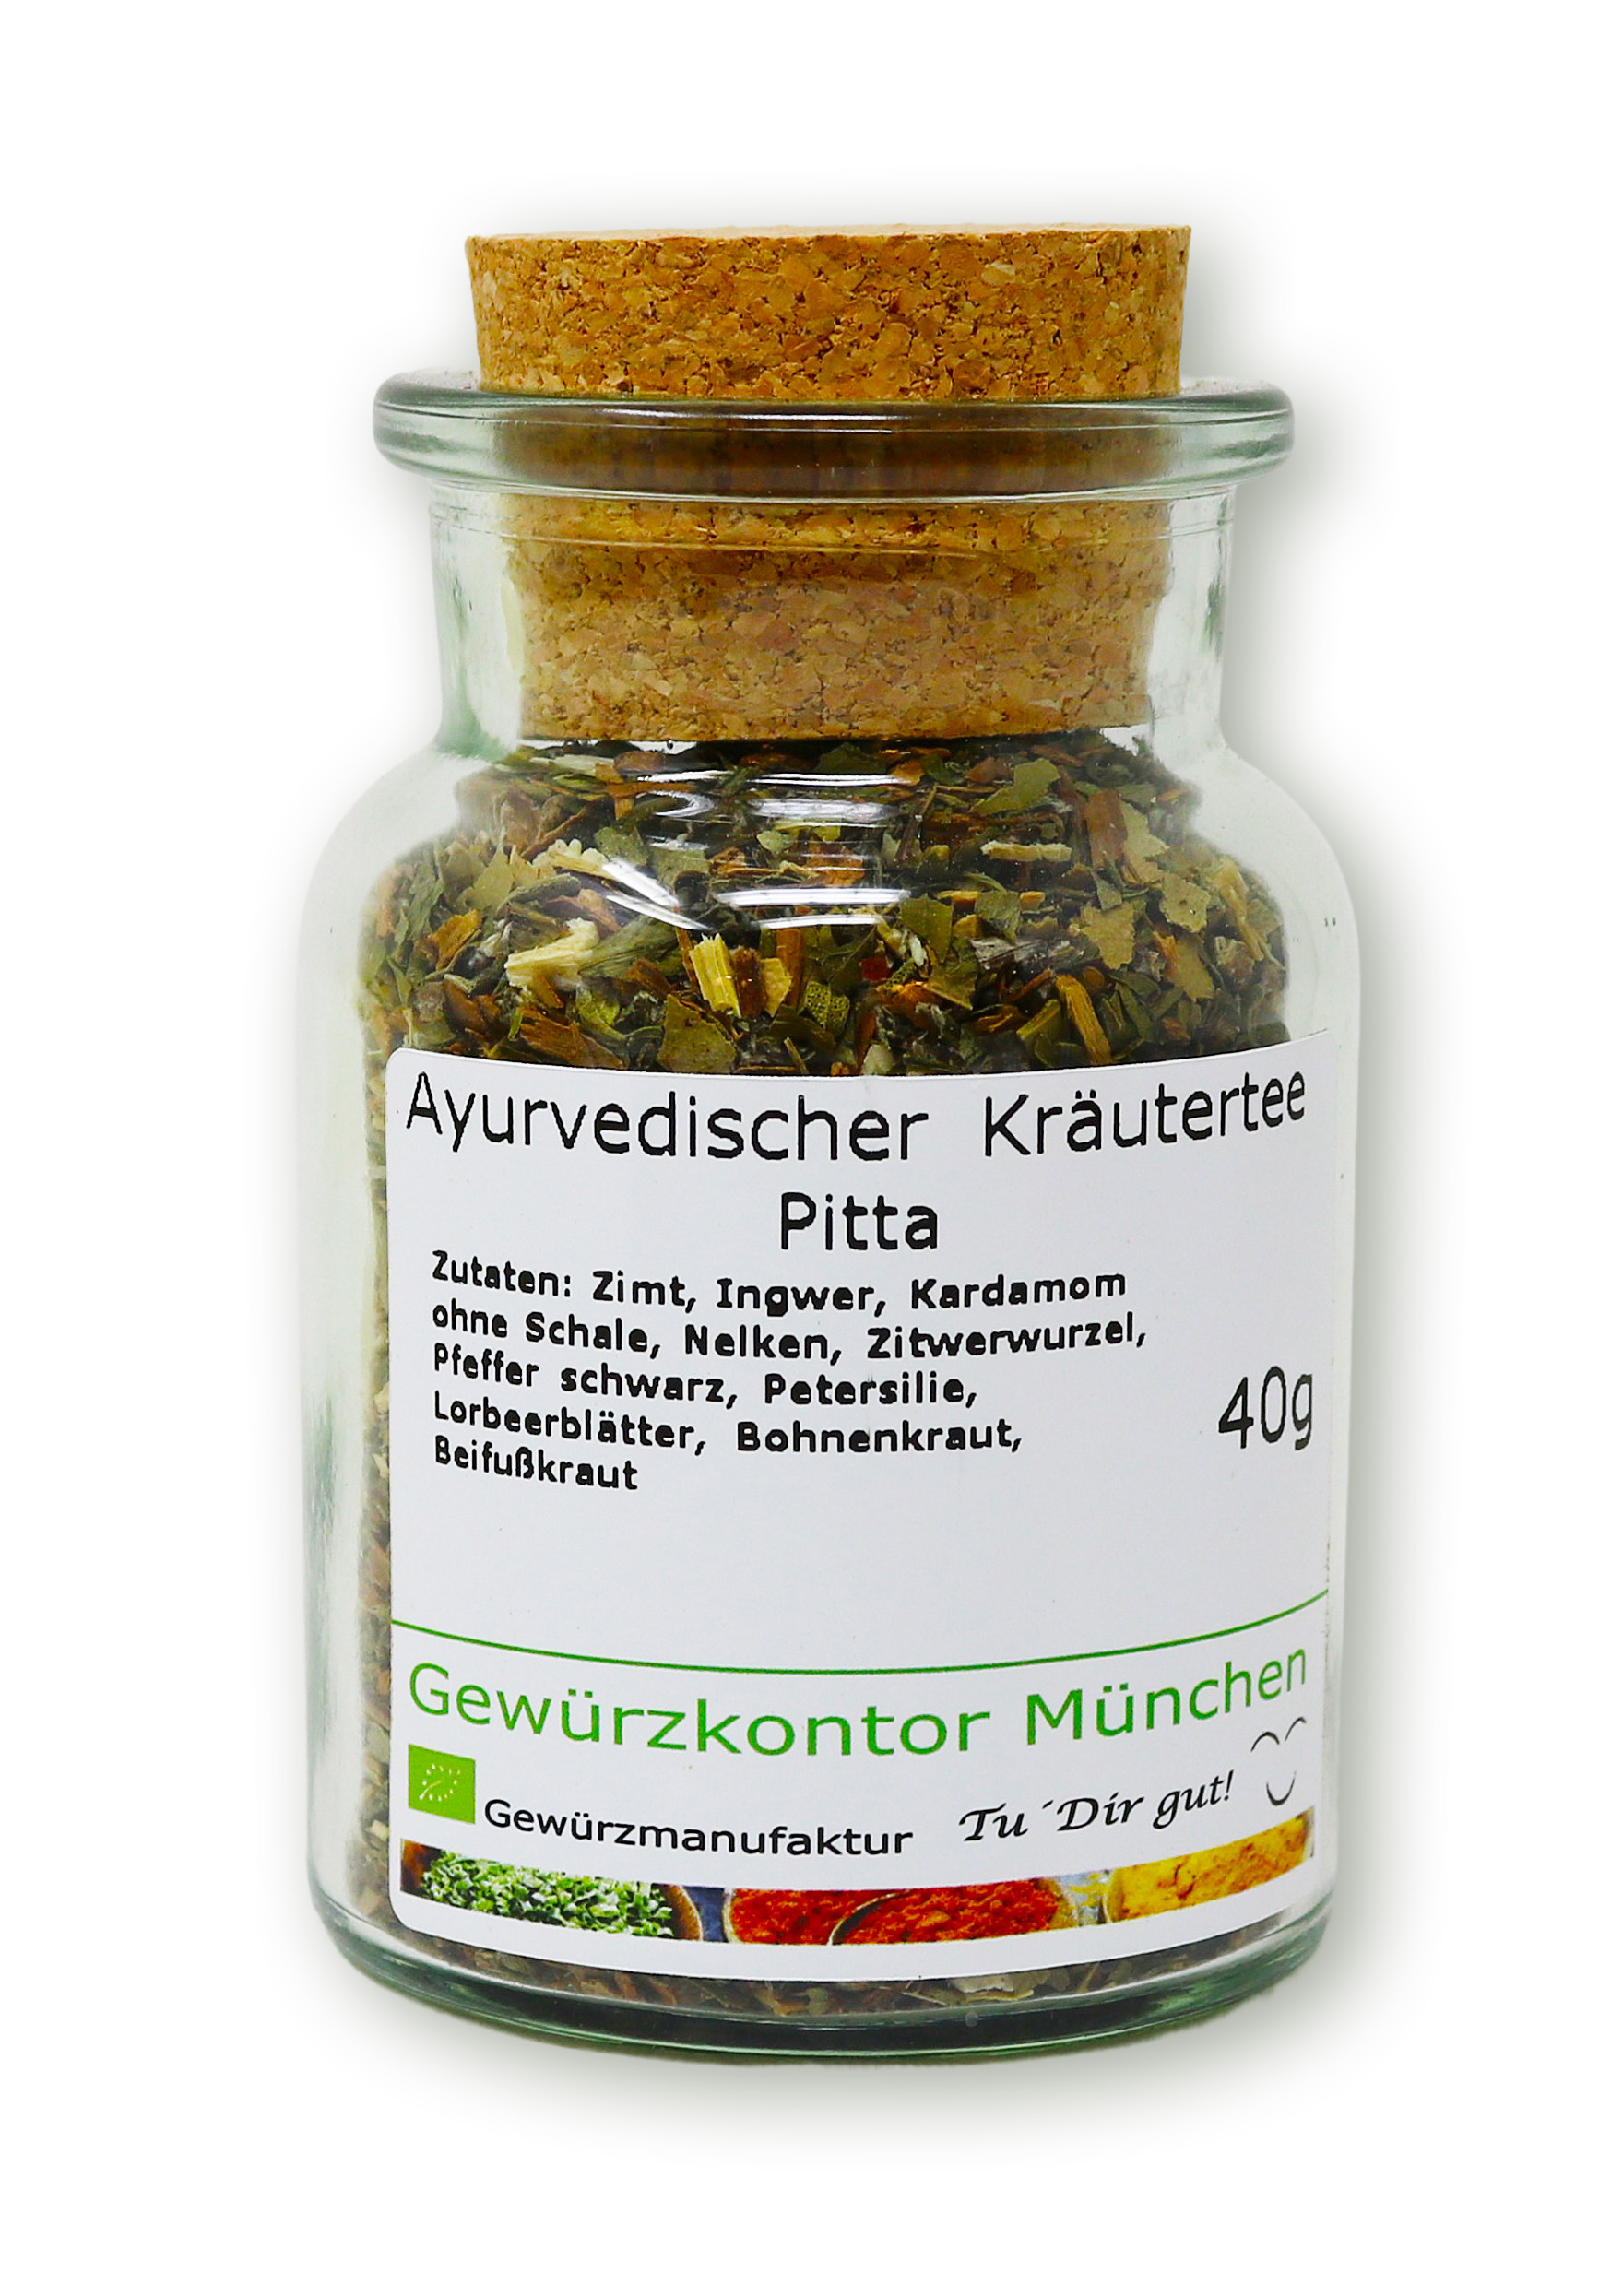 Ayurvedischer Kräutertee - Pitta 40g im Glas